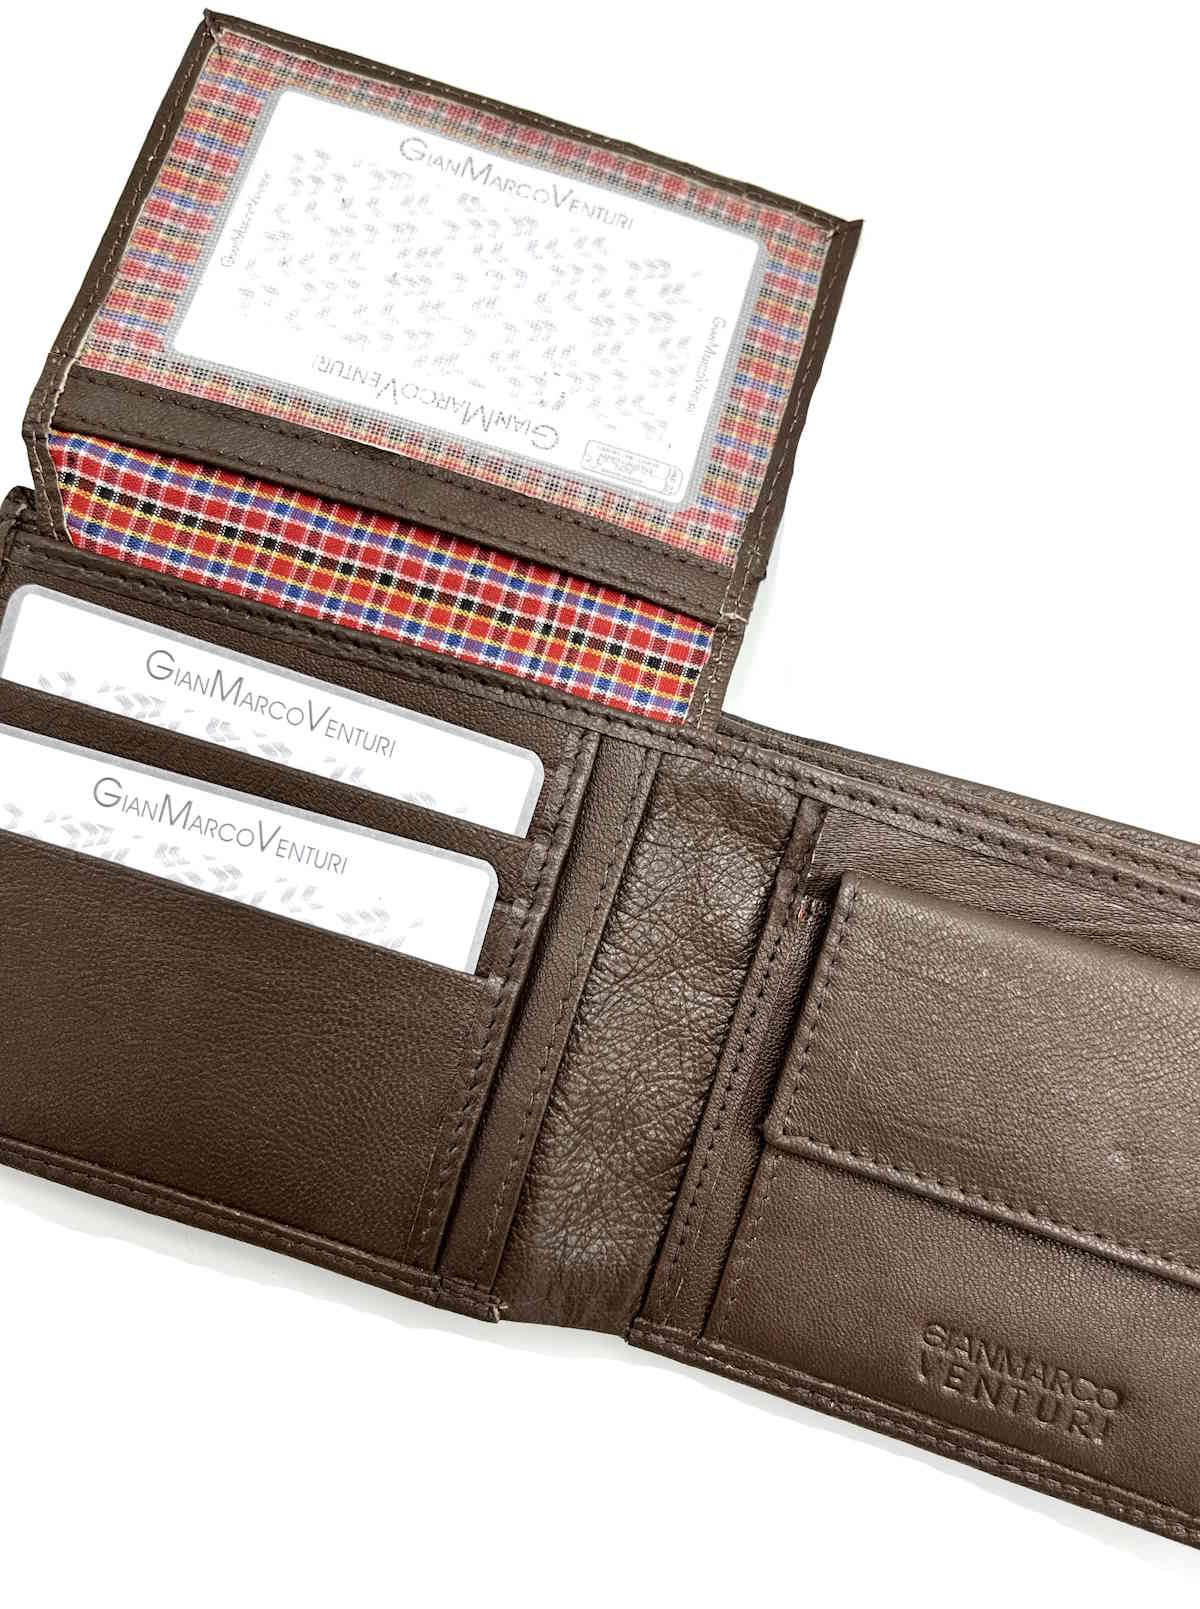 Genuine leather Wallet, Brand GMV, art. GMV4016-2